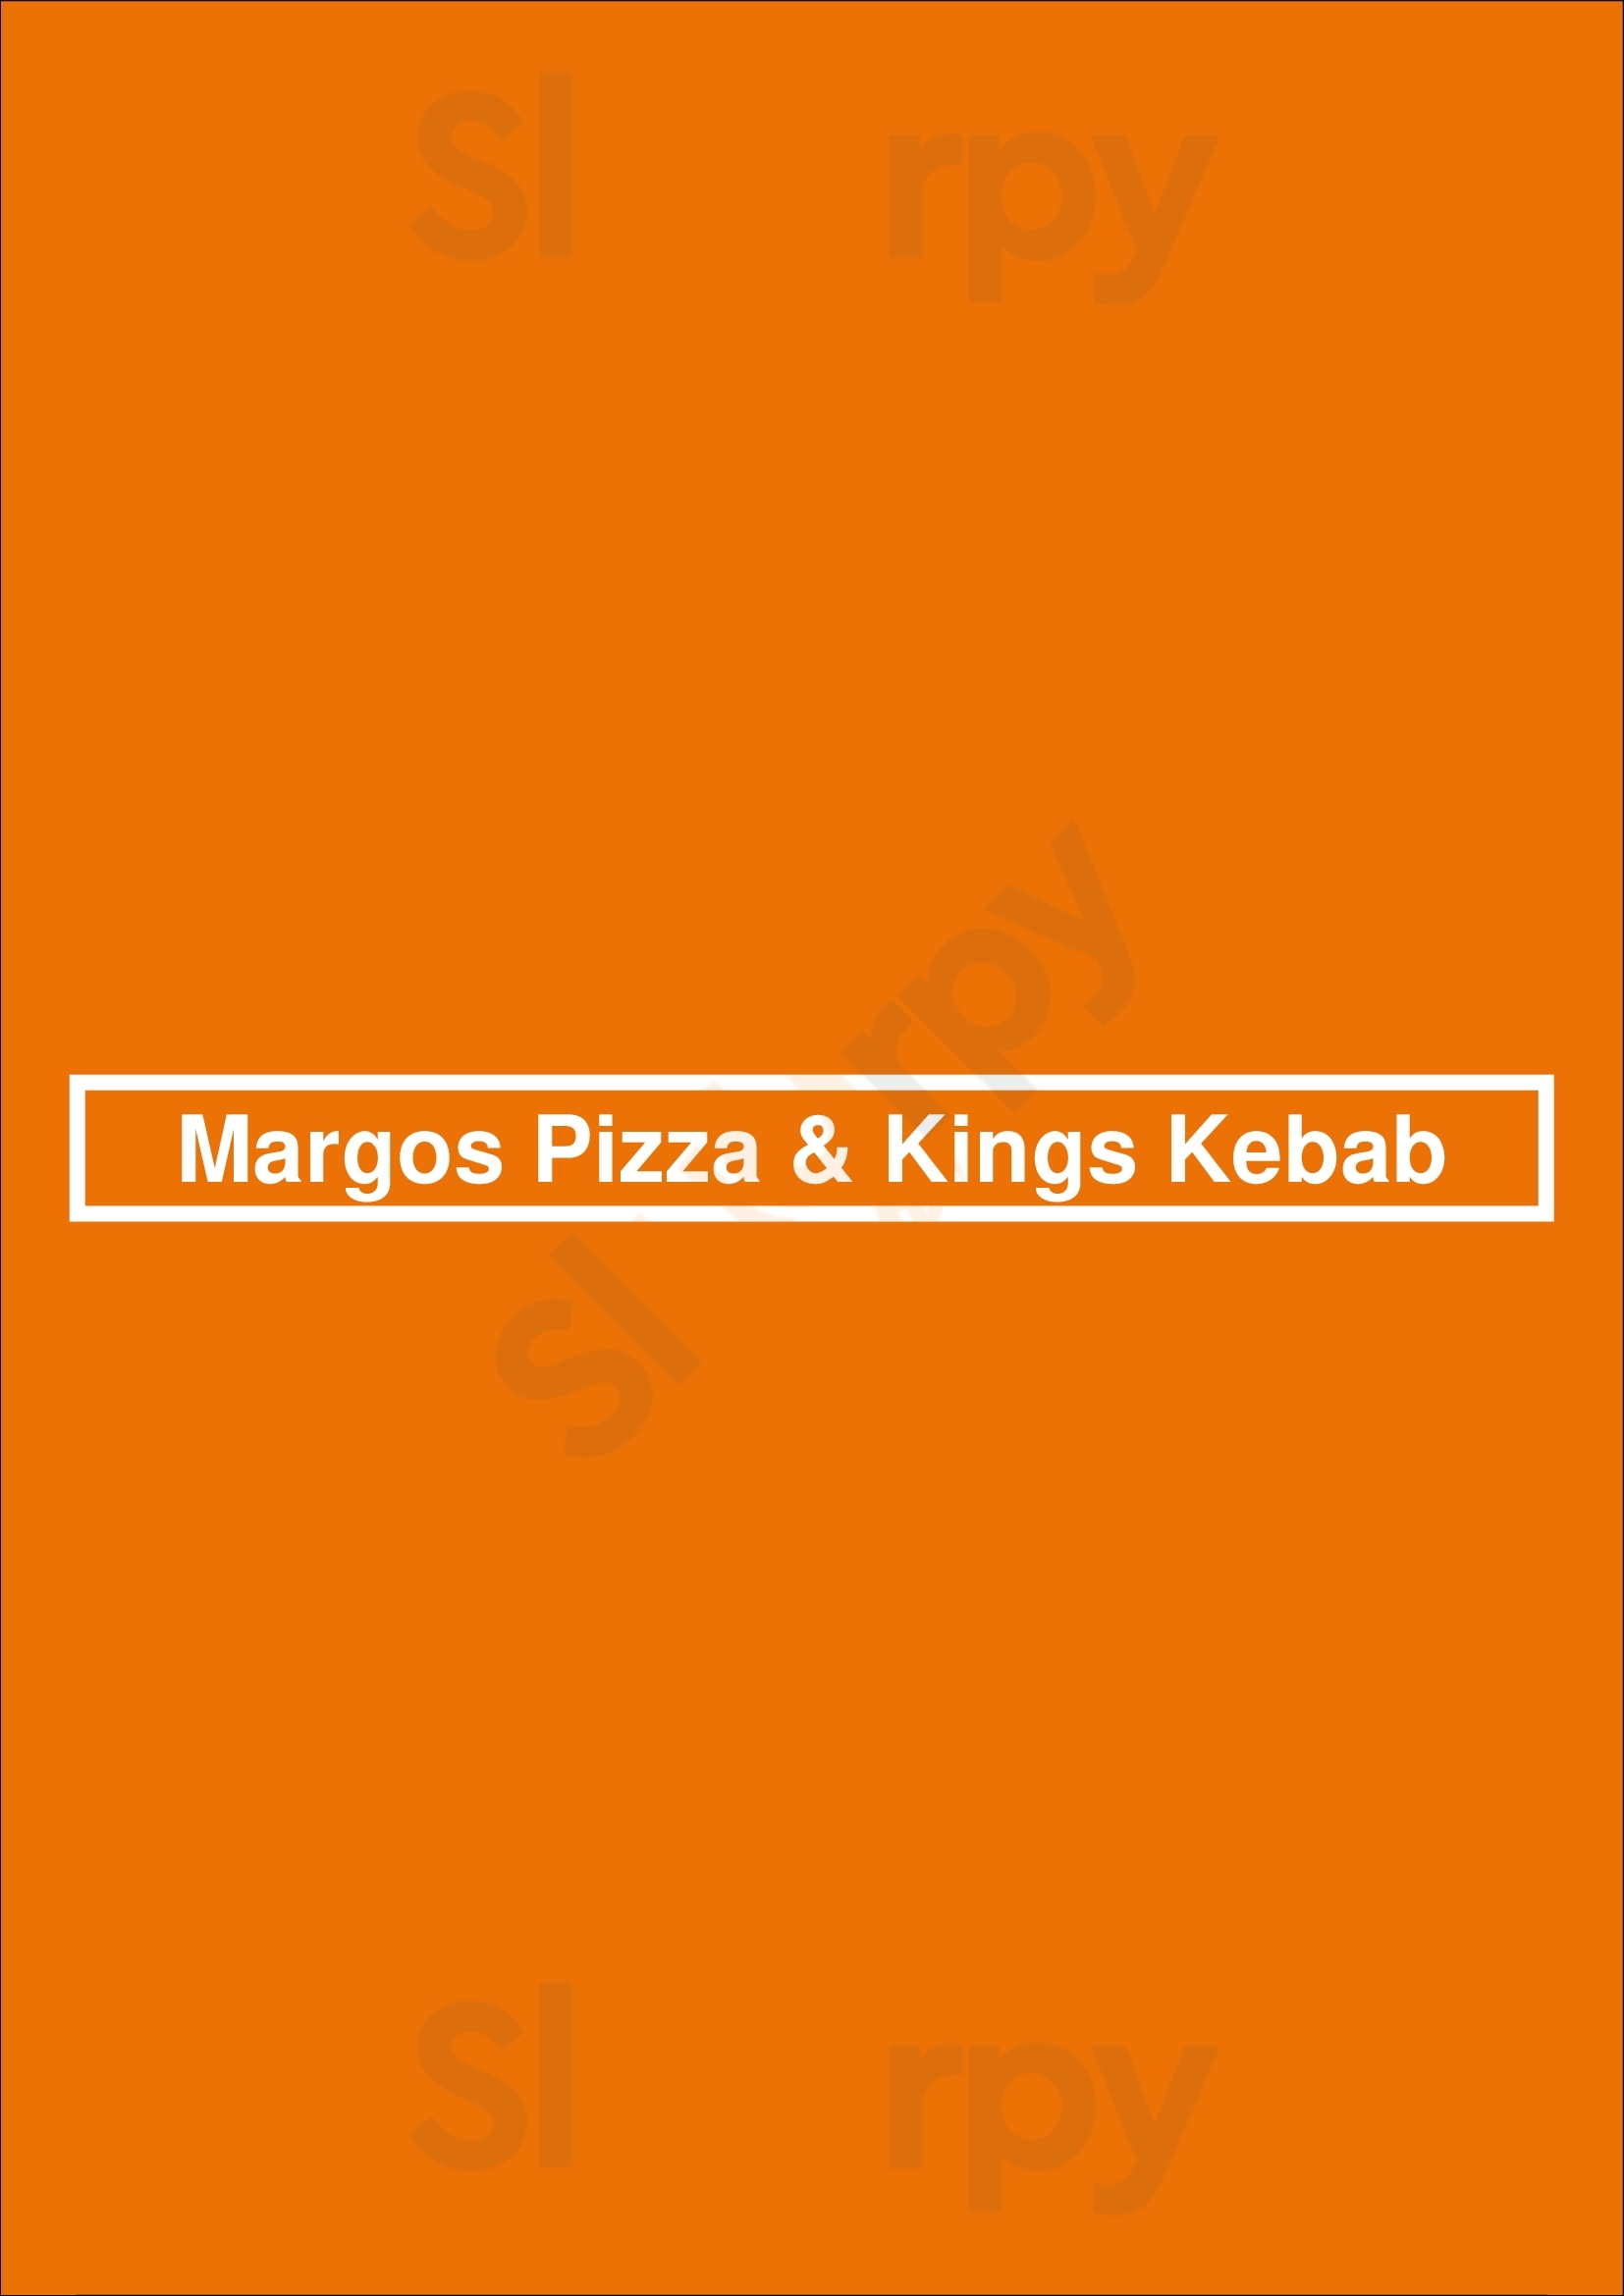 Margos Pizza & Kings Kebab Braintree Menu - 1